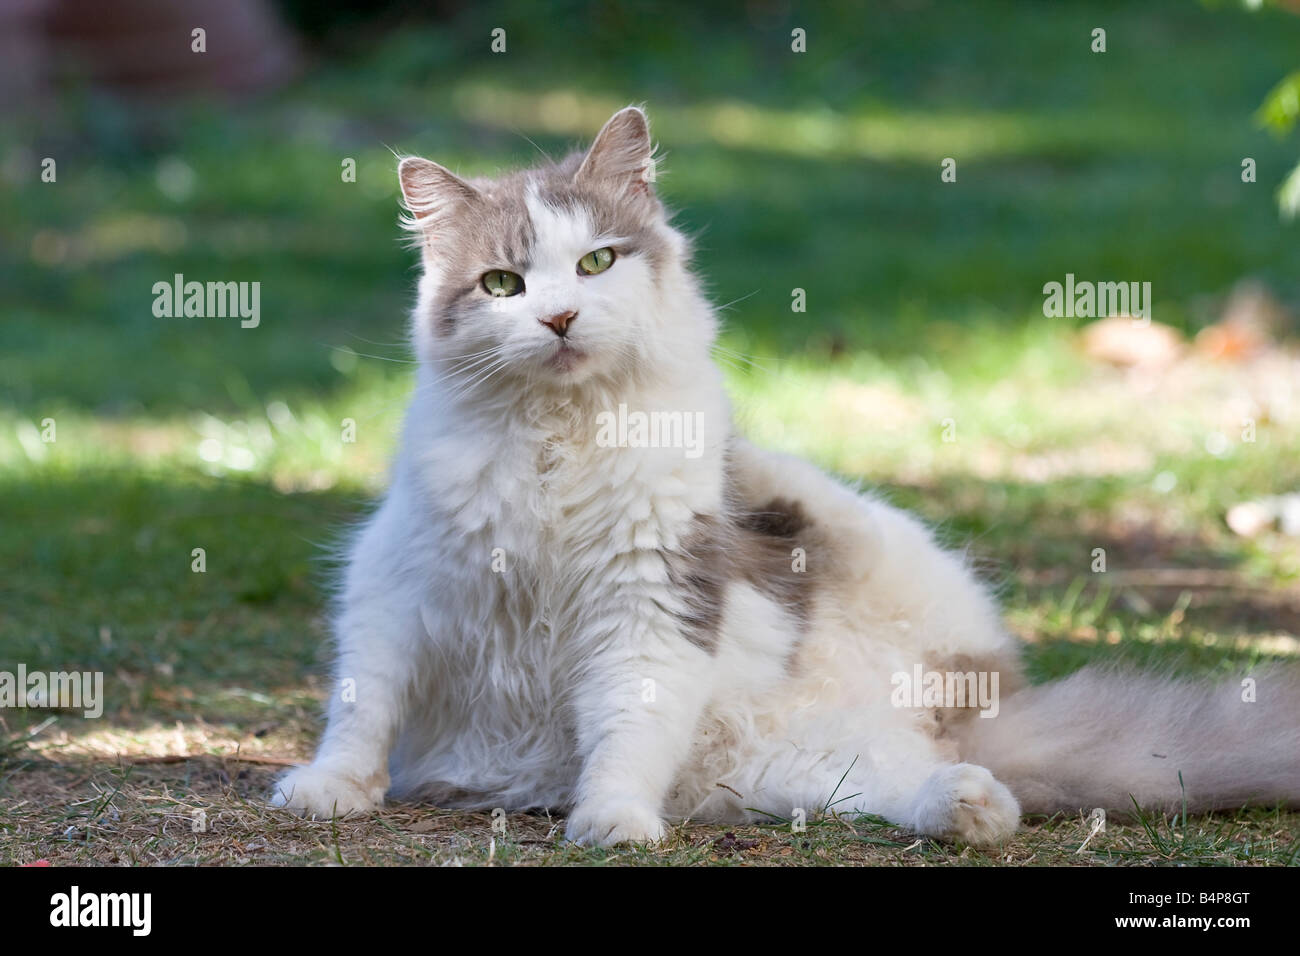 Große, flauschige graue und weiße Katze (Felis catus) Suchen Sie direkt in die Kamera während einer Pflege Sitzung sitzend auf Gras im Garten Stockfoto